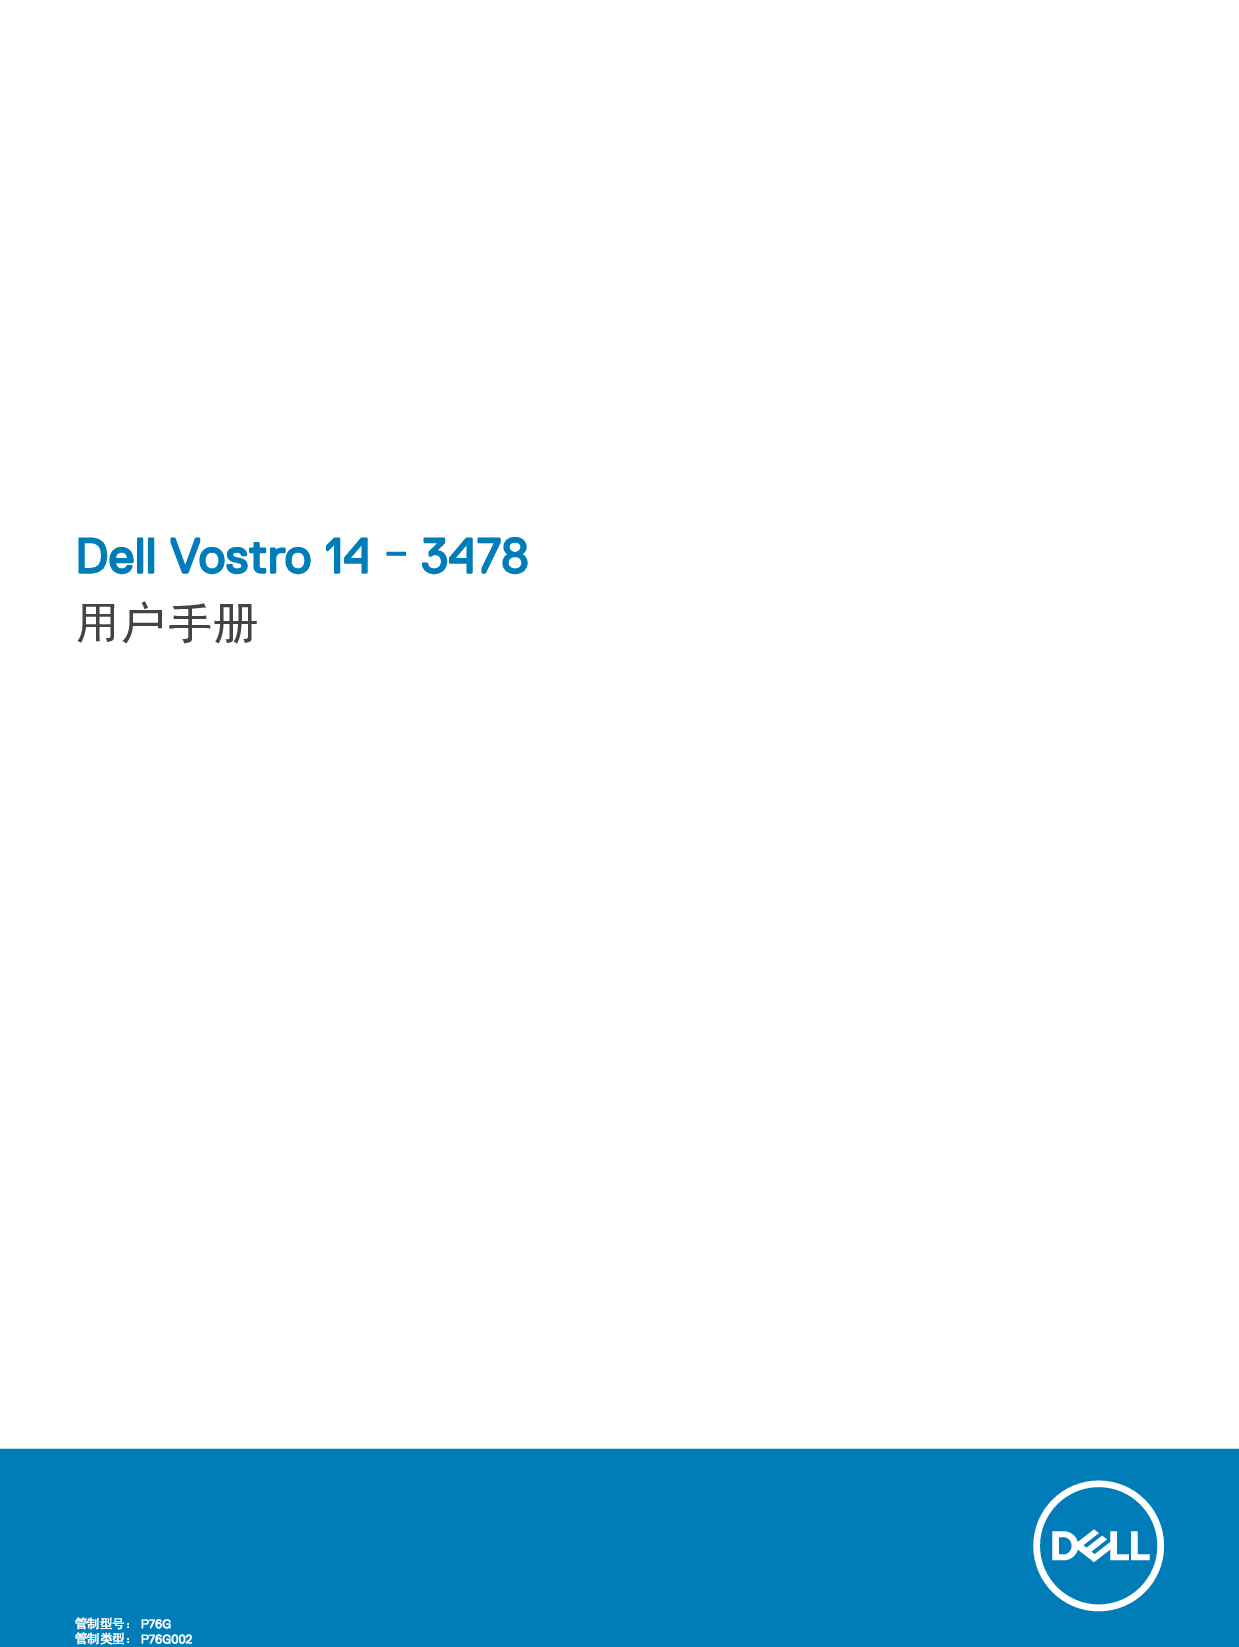 戴尔 Dell Vostro 14-3478 用户手册 封面